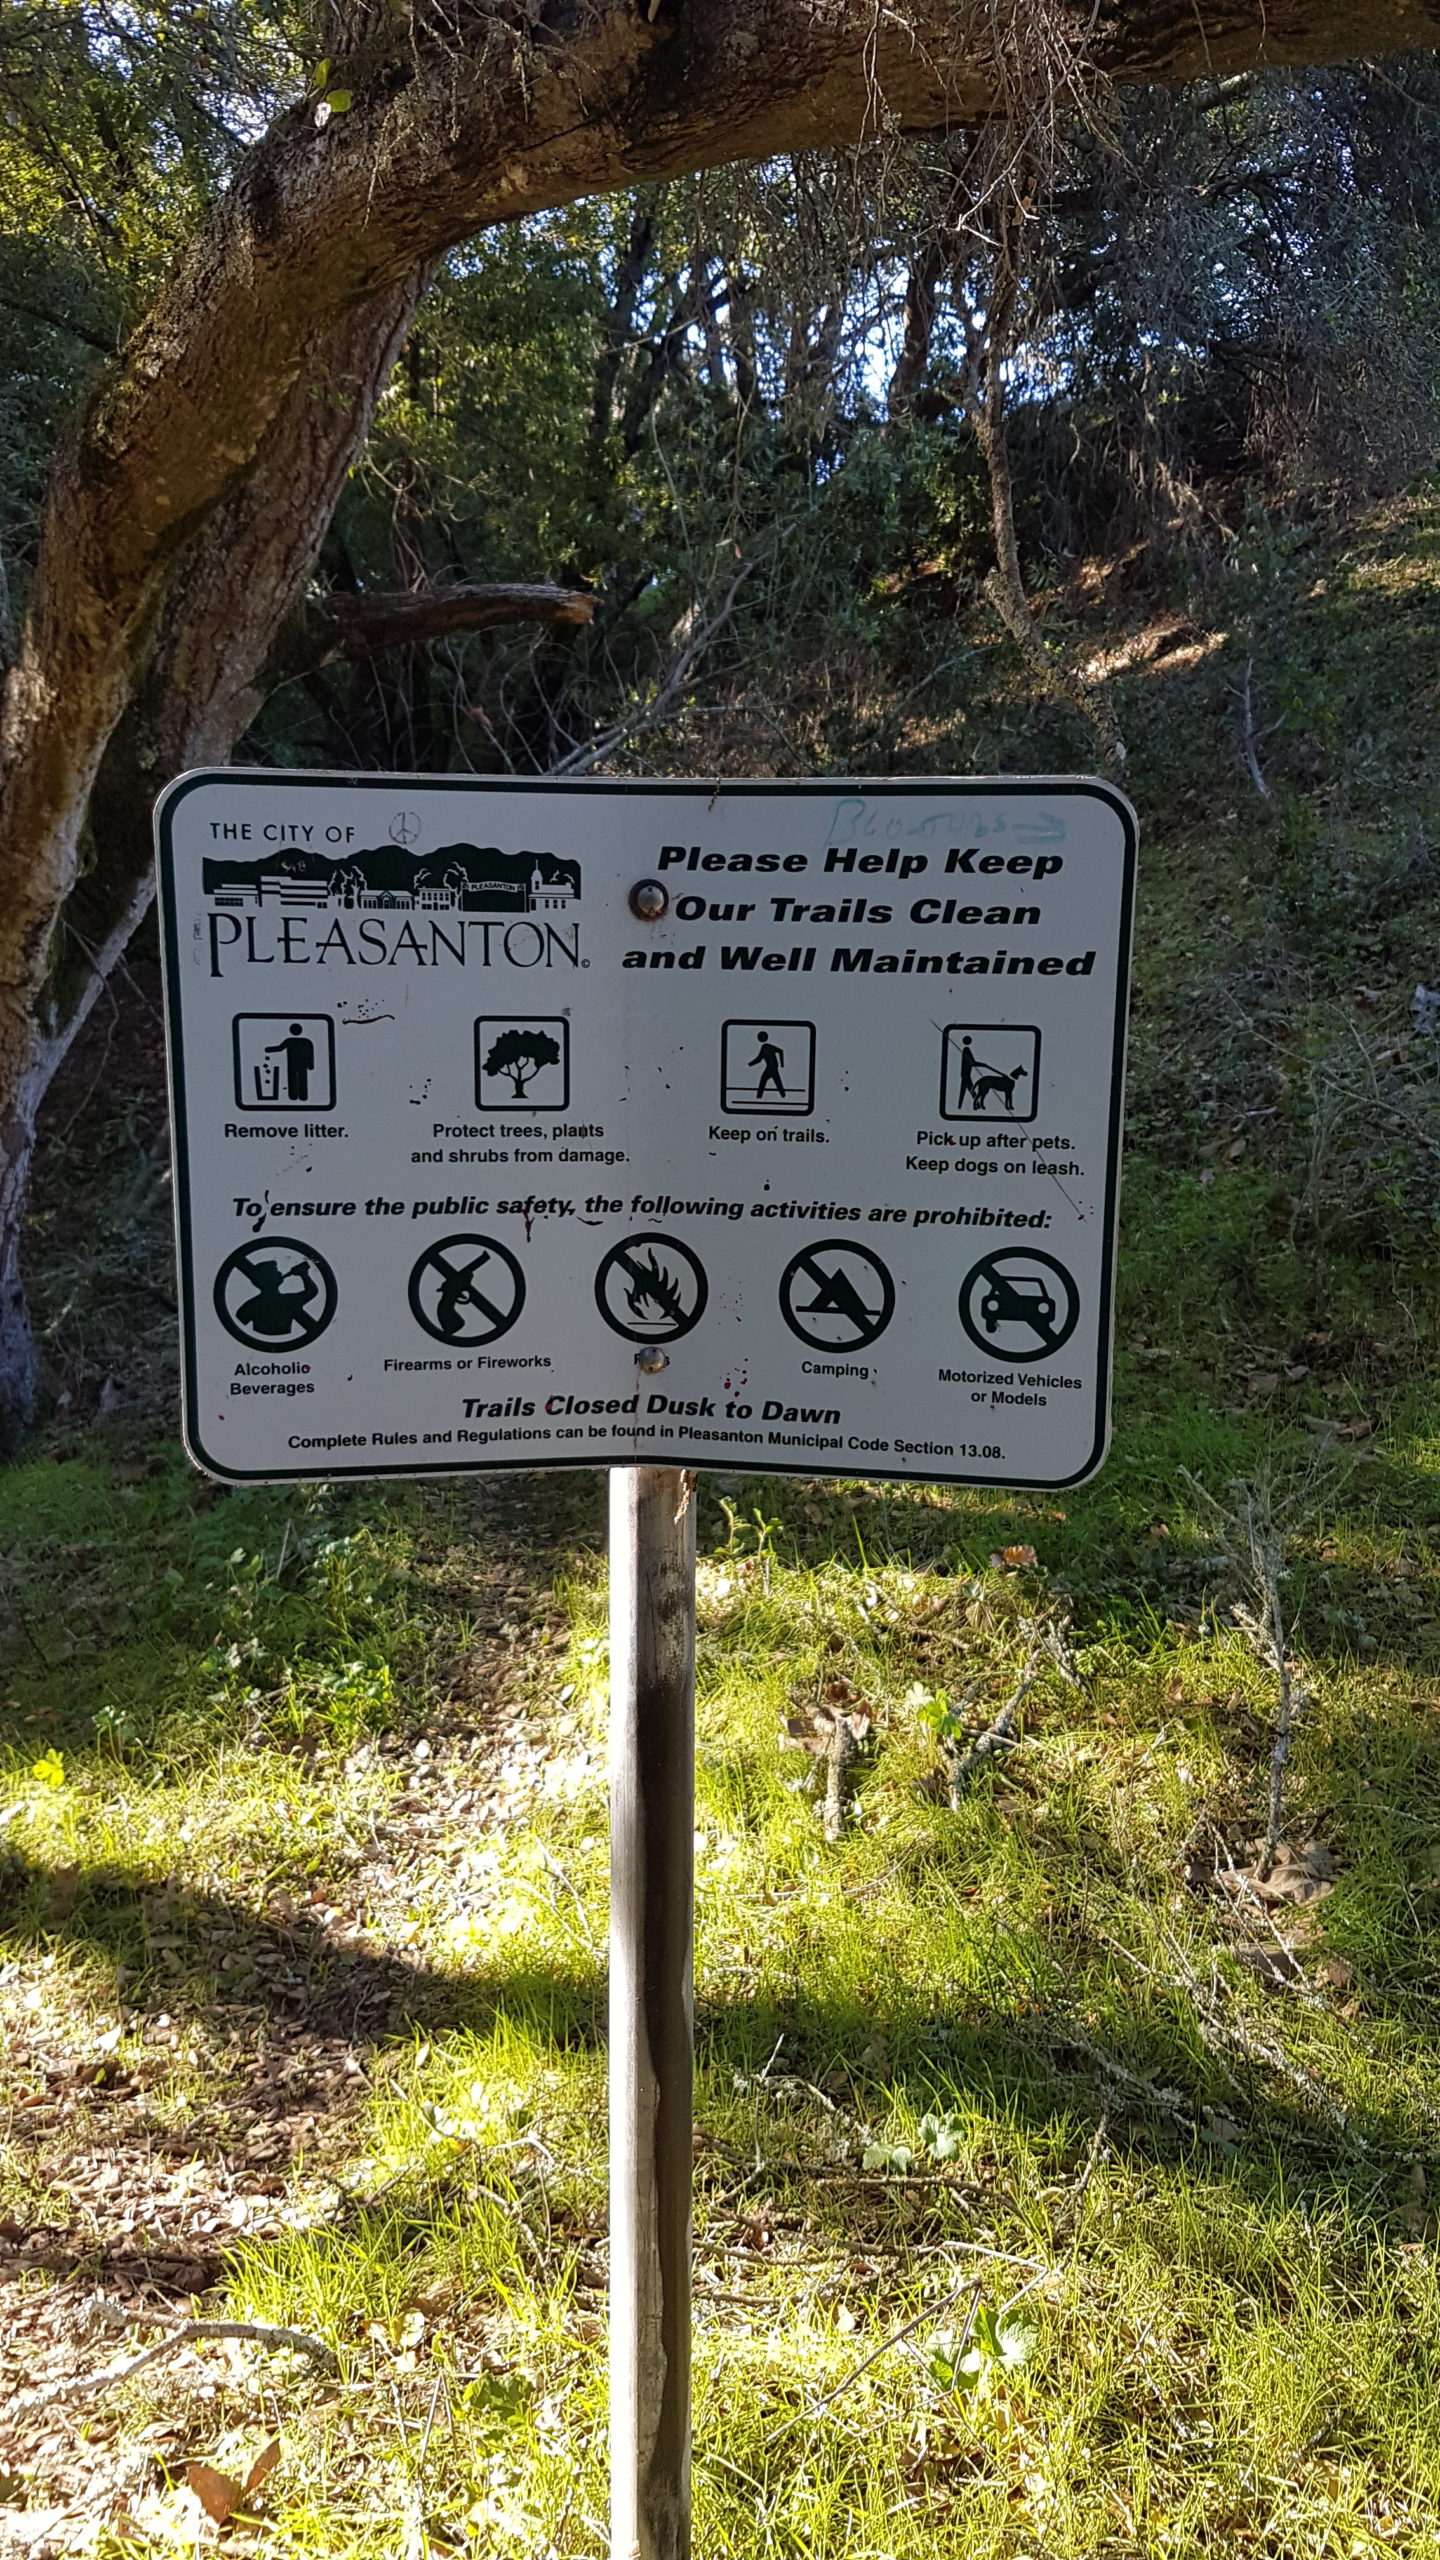 règles du parc pleasanton californie